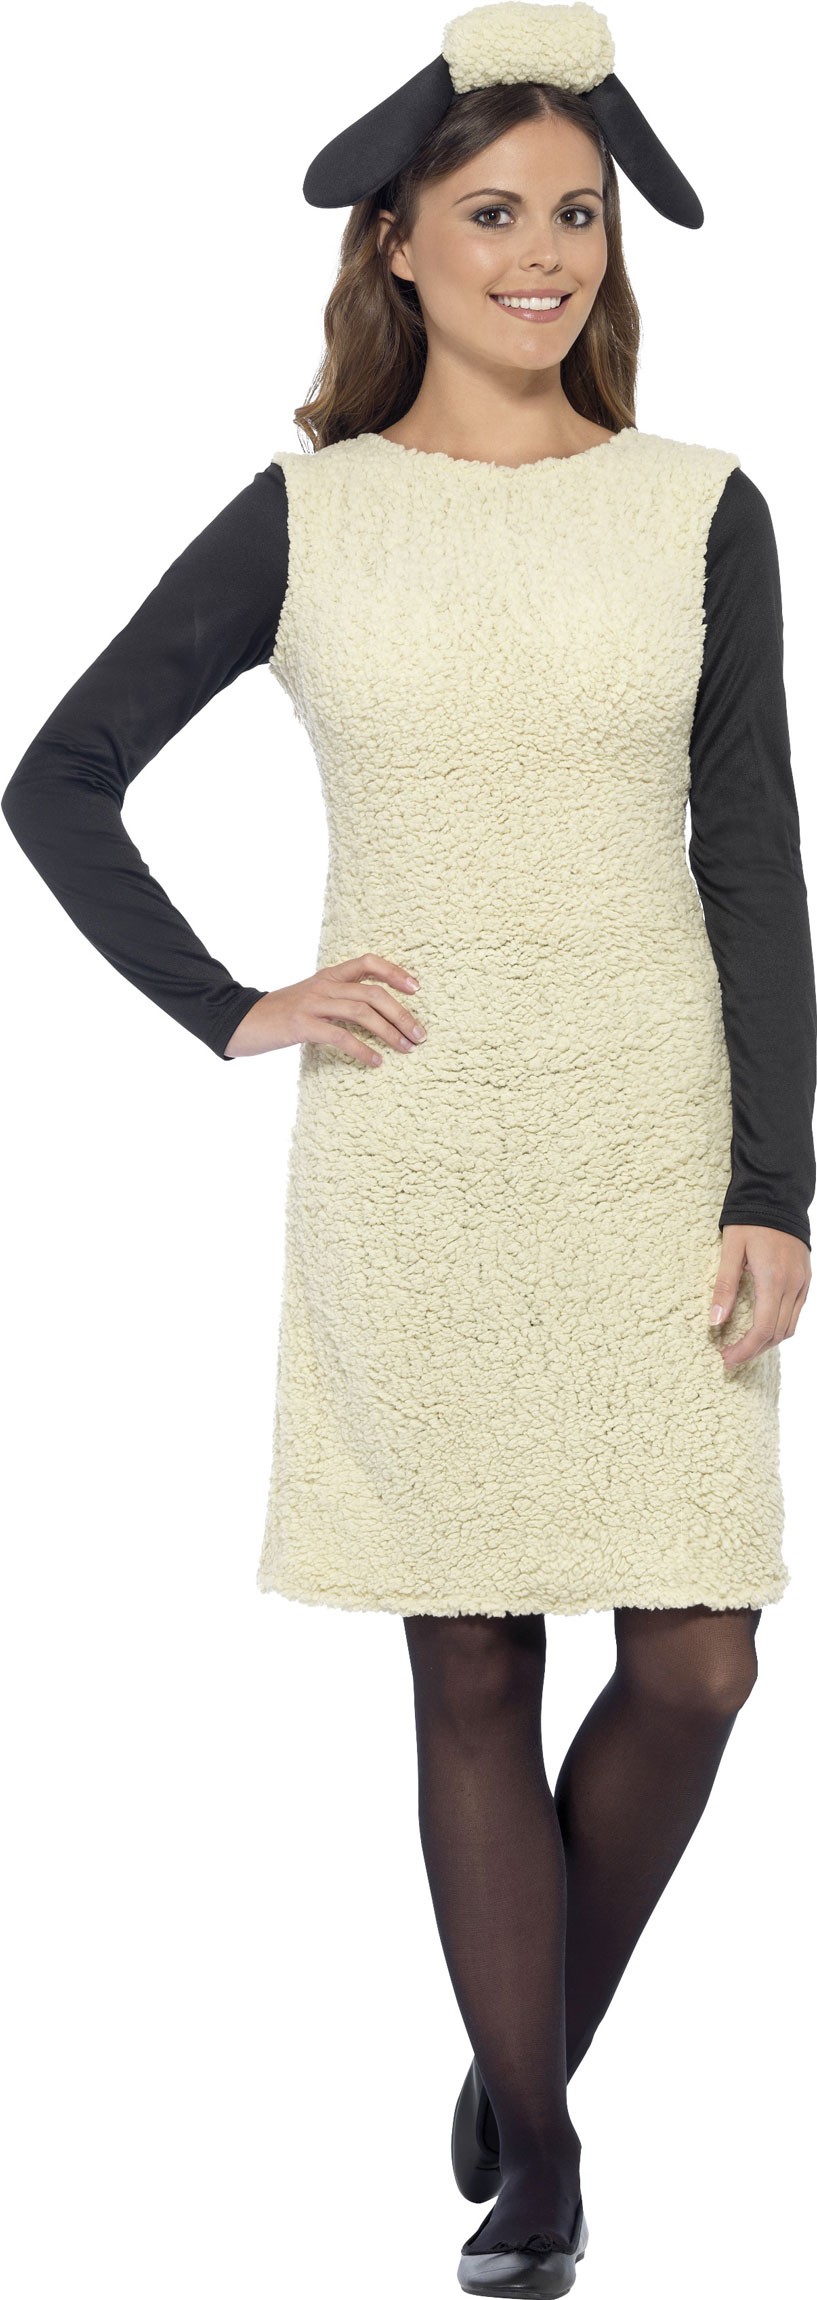 Shaun the sheep women's dress.